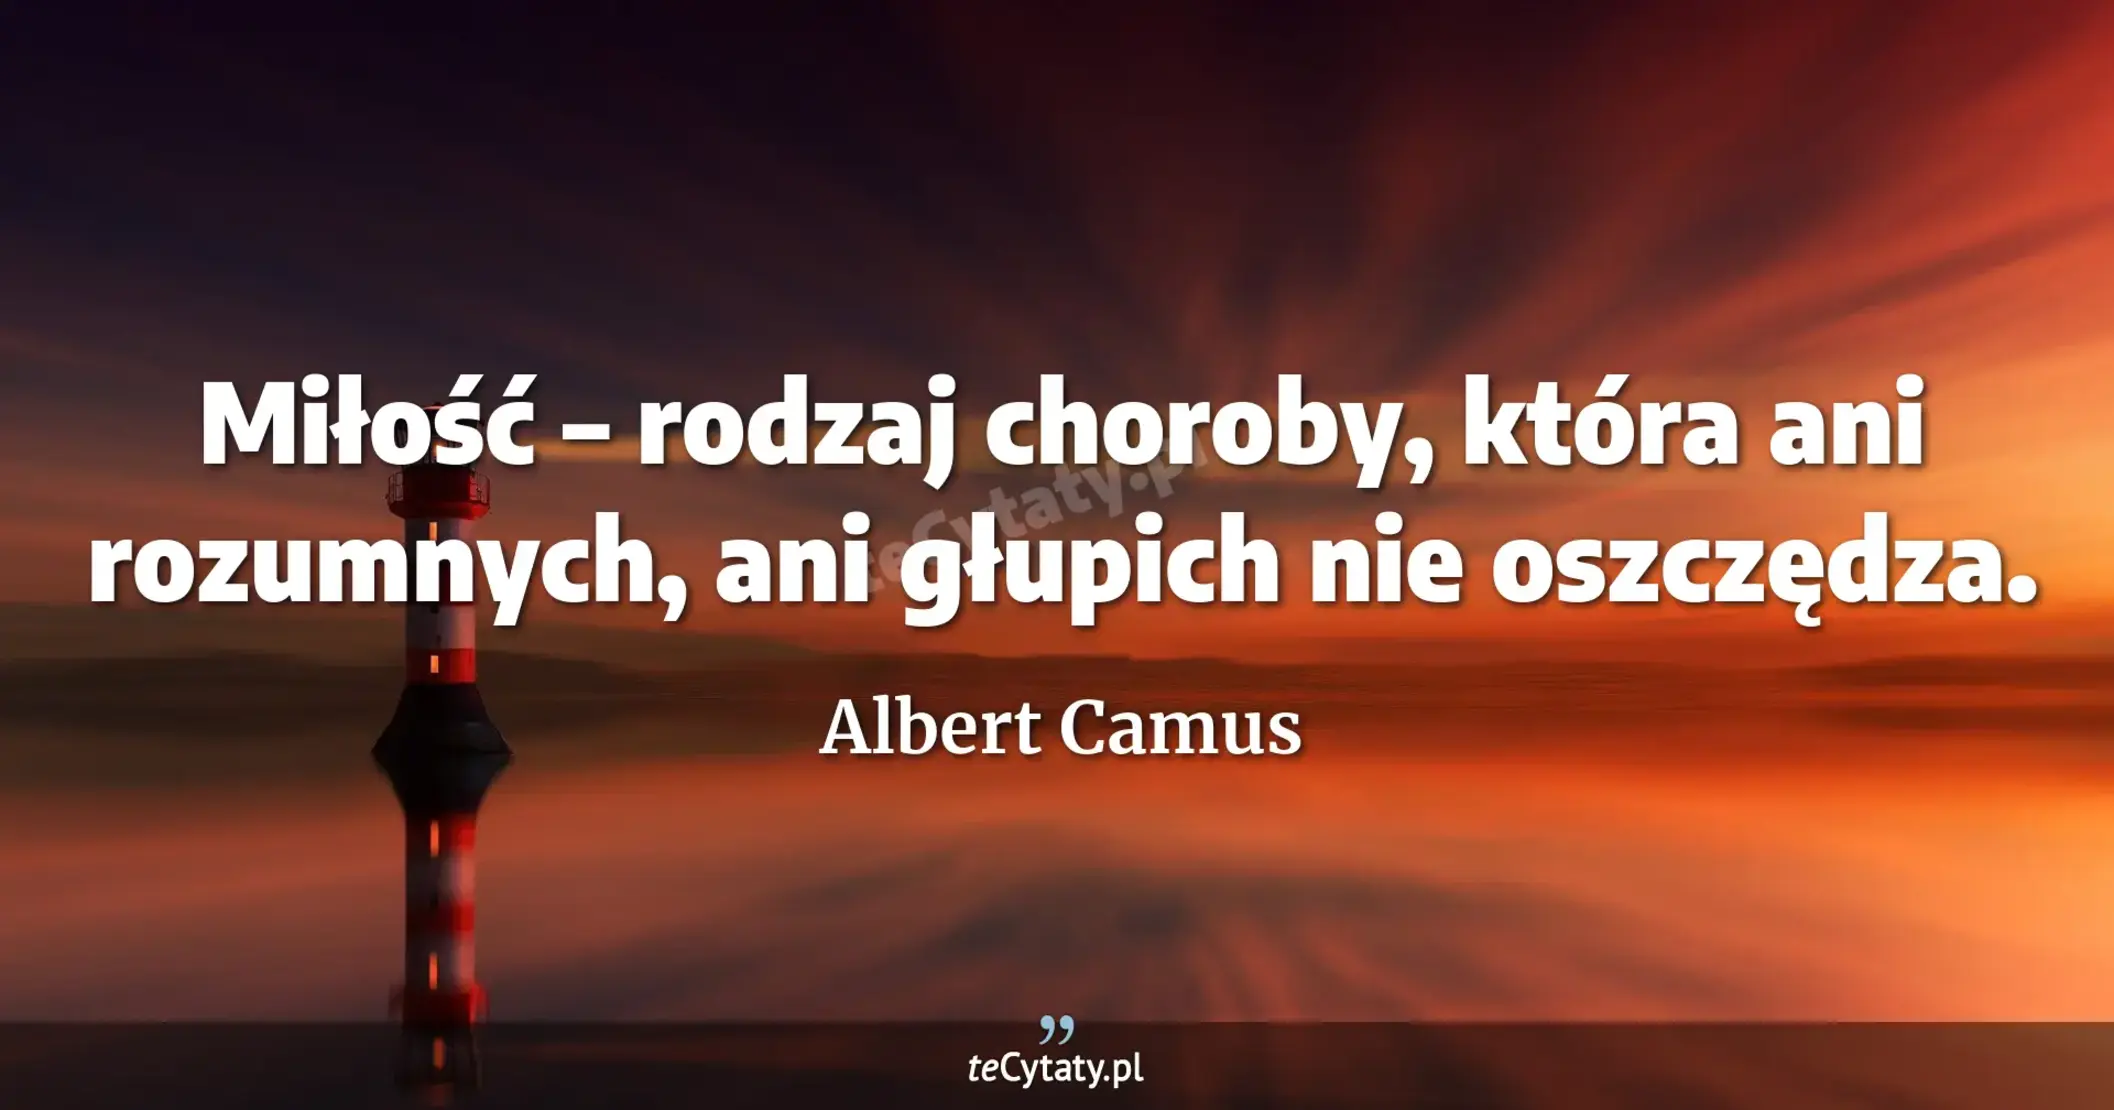 Miłość – rodzaj choroby, która ani rozumnych, ani głupich nie oszczędza. - Albert Camus